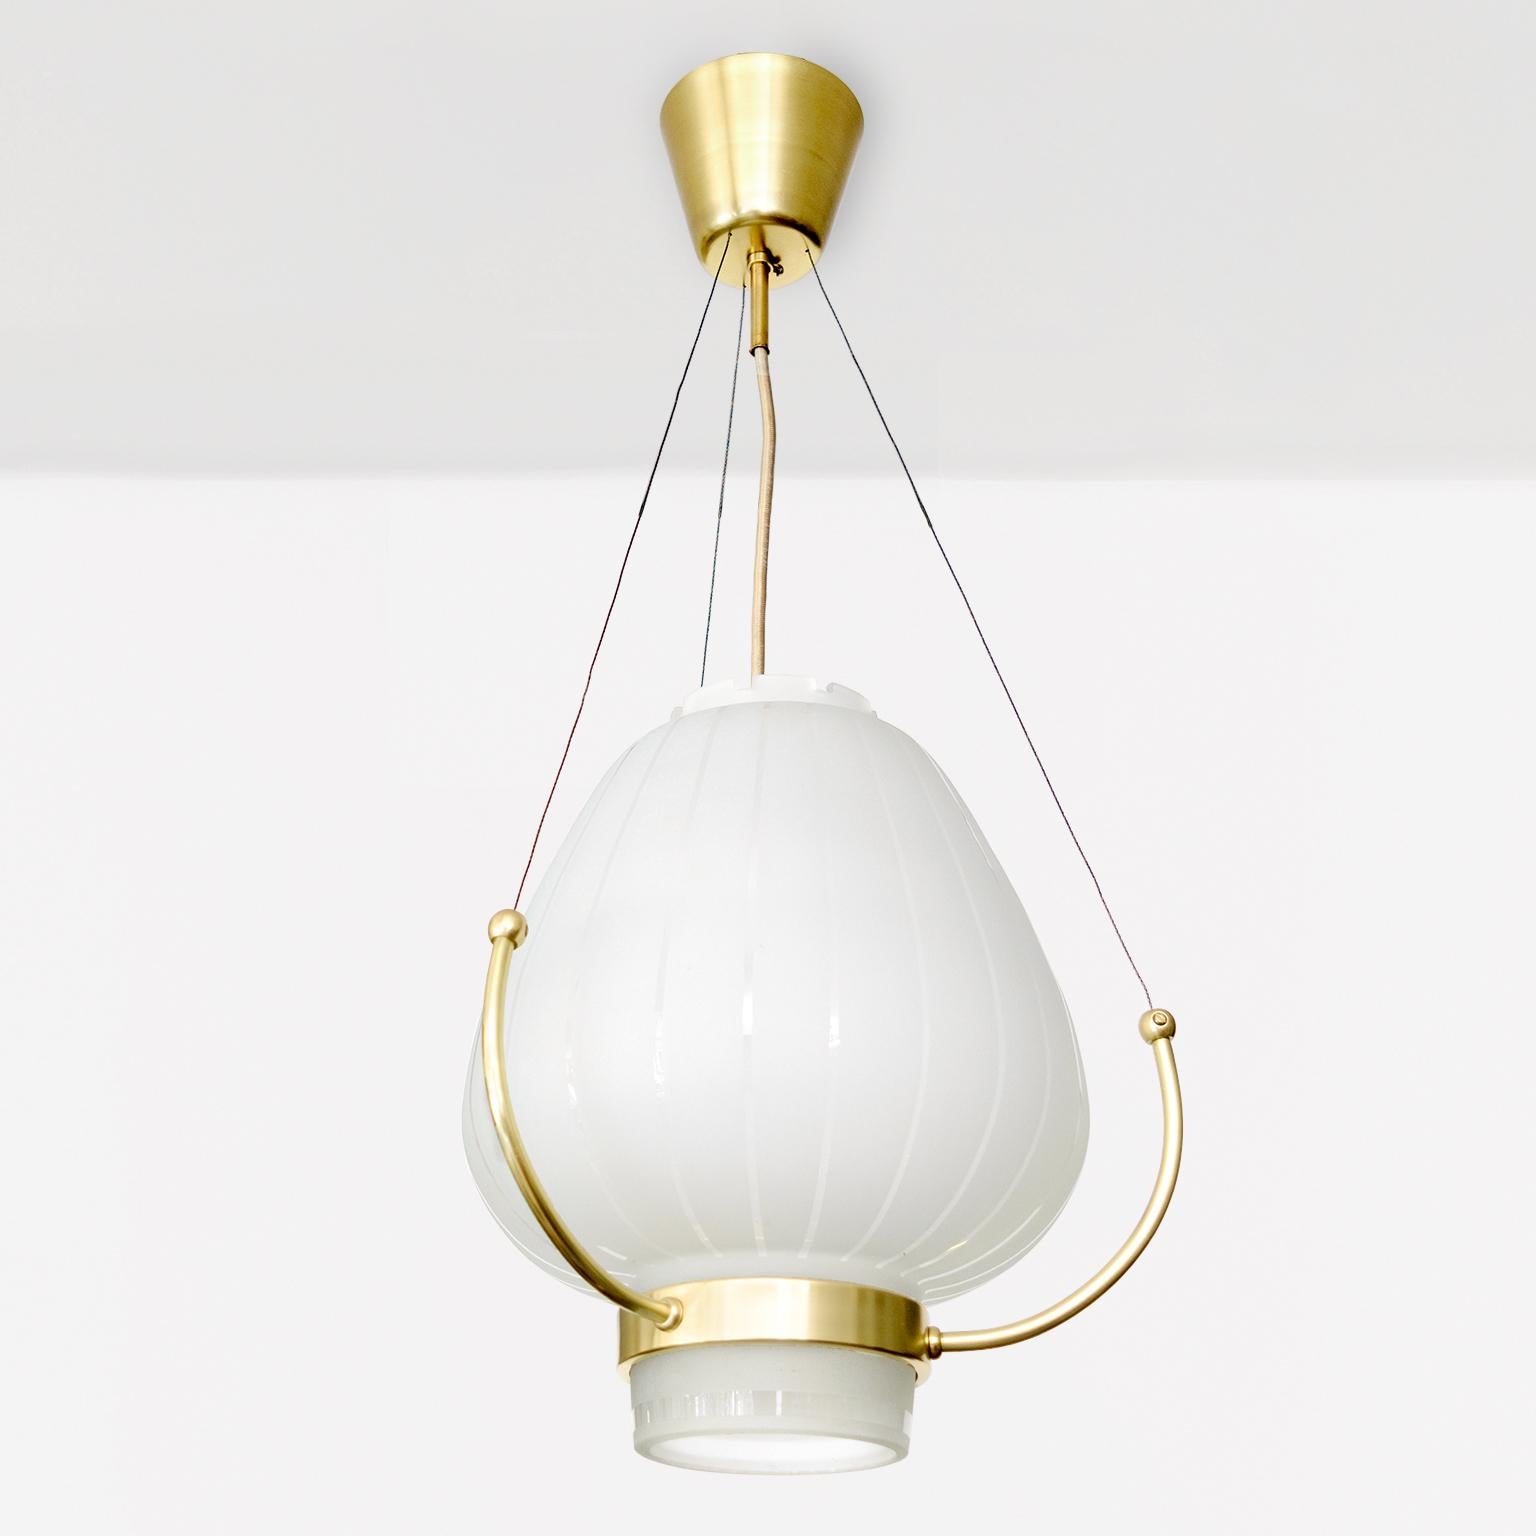 Orrefors (Schweden) zugeschriebene Deckenlampe, ca. 1930/40er Jahre, mit einem bauchigen, geätzten und polierten Glasschirm in der Mitte. Die dreiarmige Halterung ist an Drähten aufgehängt, die mit dem Vordach verbunden sind. Die obere Öffnung ist